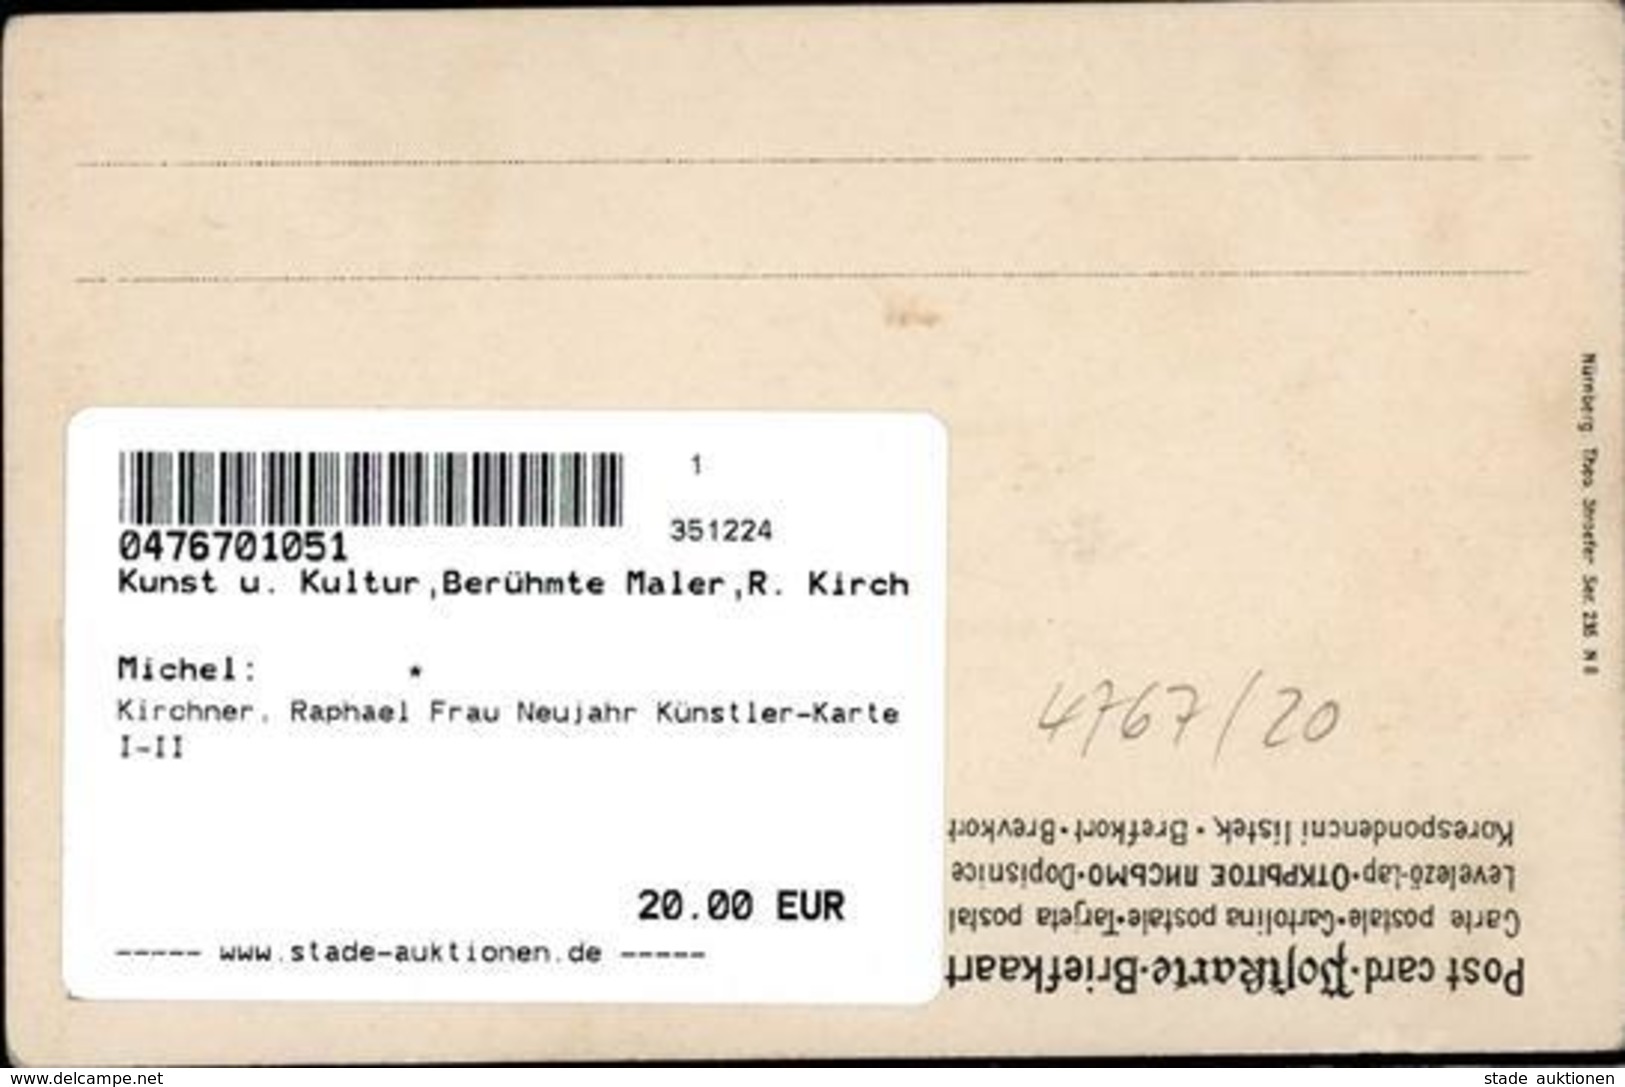 Kirchner, Raphael Frau Neujahr Künstler-Karte I-II Bonne Annee - Kirchner, Raphael